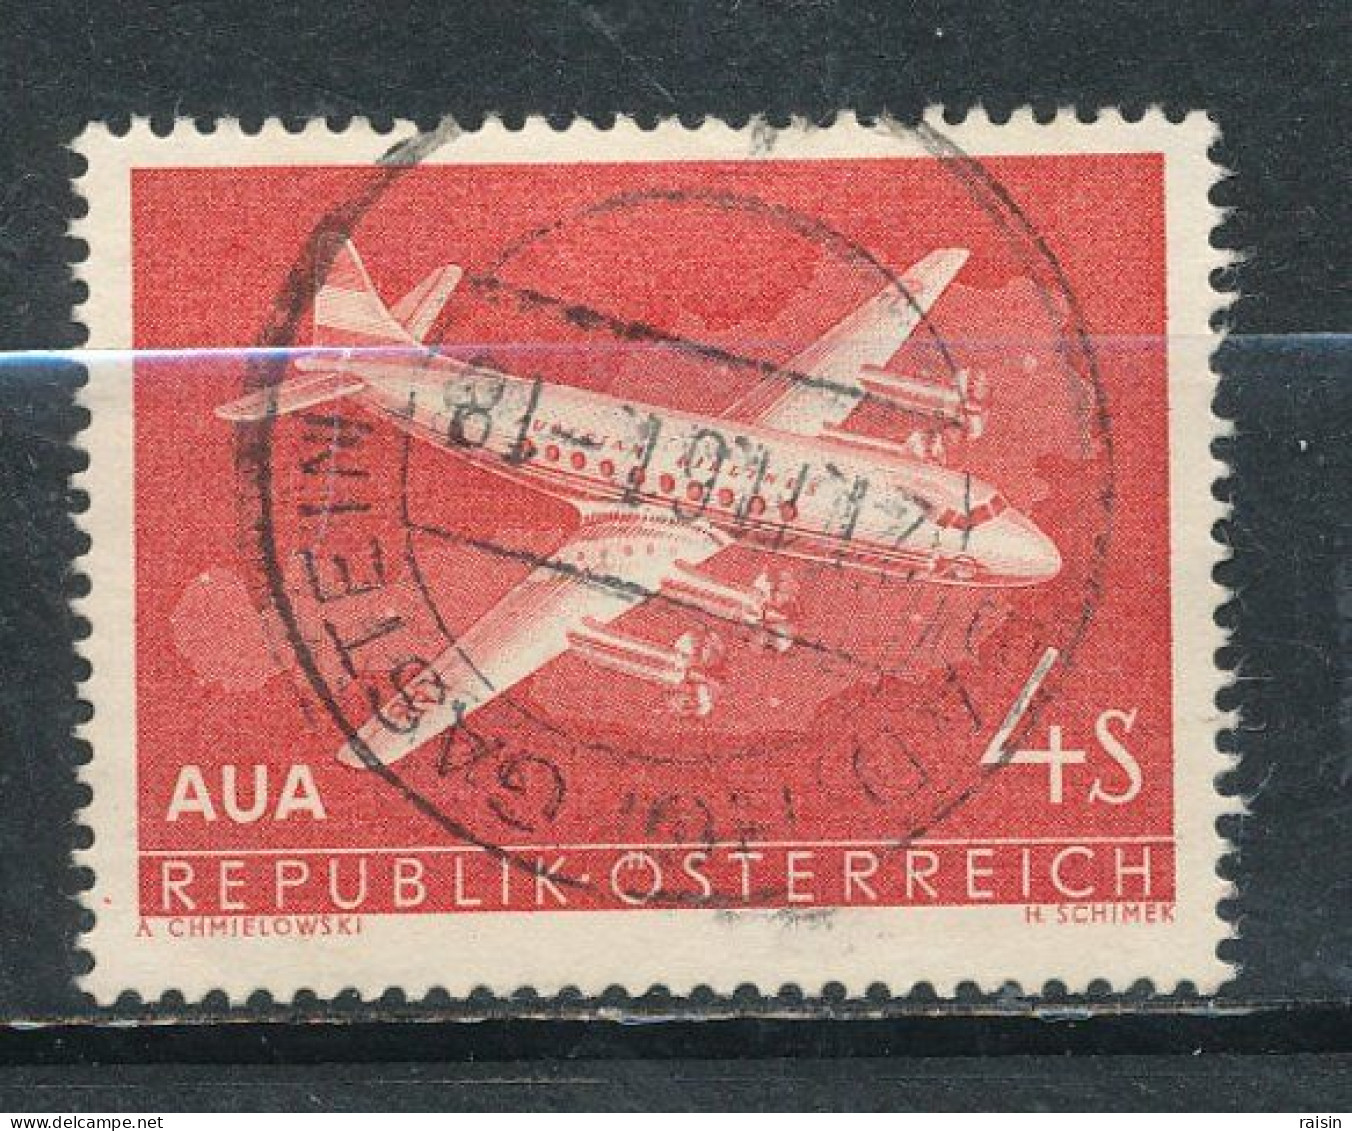 Autriche 1958  Michel 1041,  Yvert PA 61 - Oblitérés